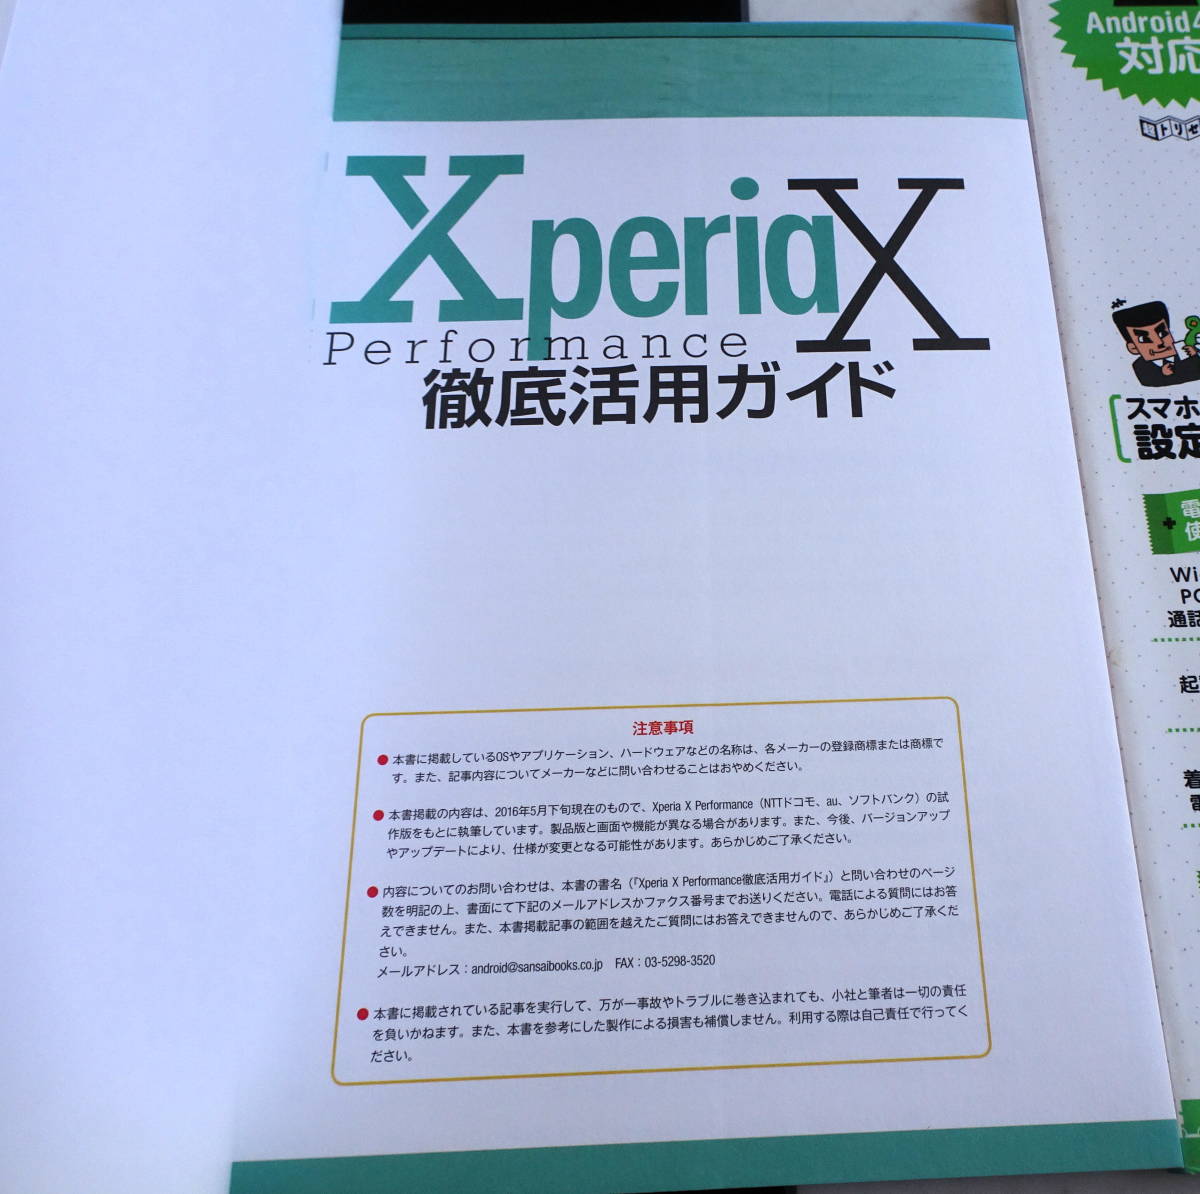 Xperia X Performance徹底活用ガイド+スマートフォンの使いやすい設定はコレだ アンドロイドに不満があったら読みなさい！ 合計2冊セット